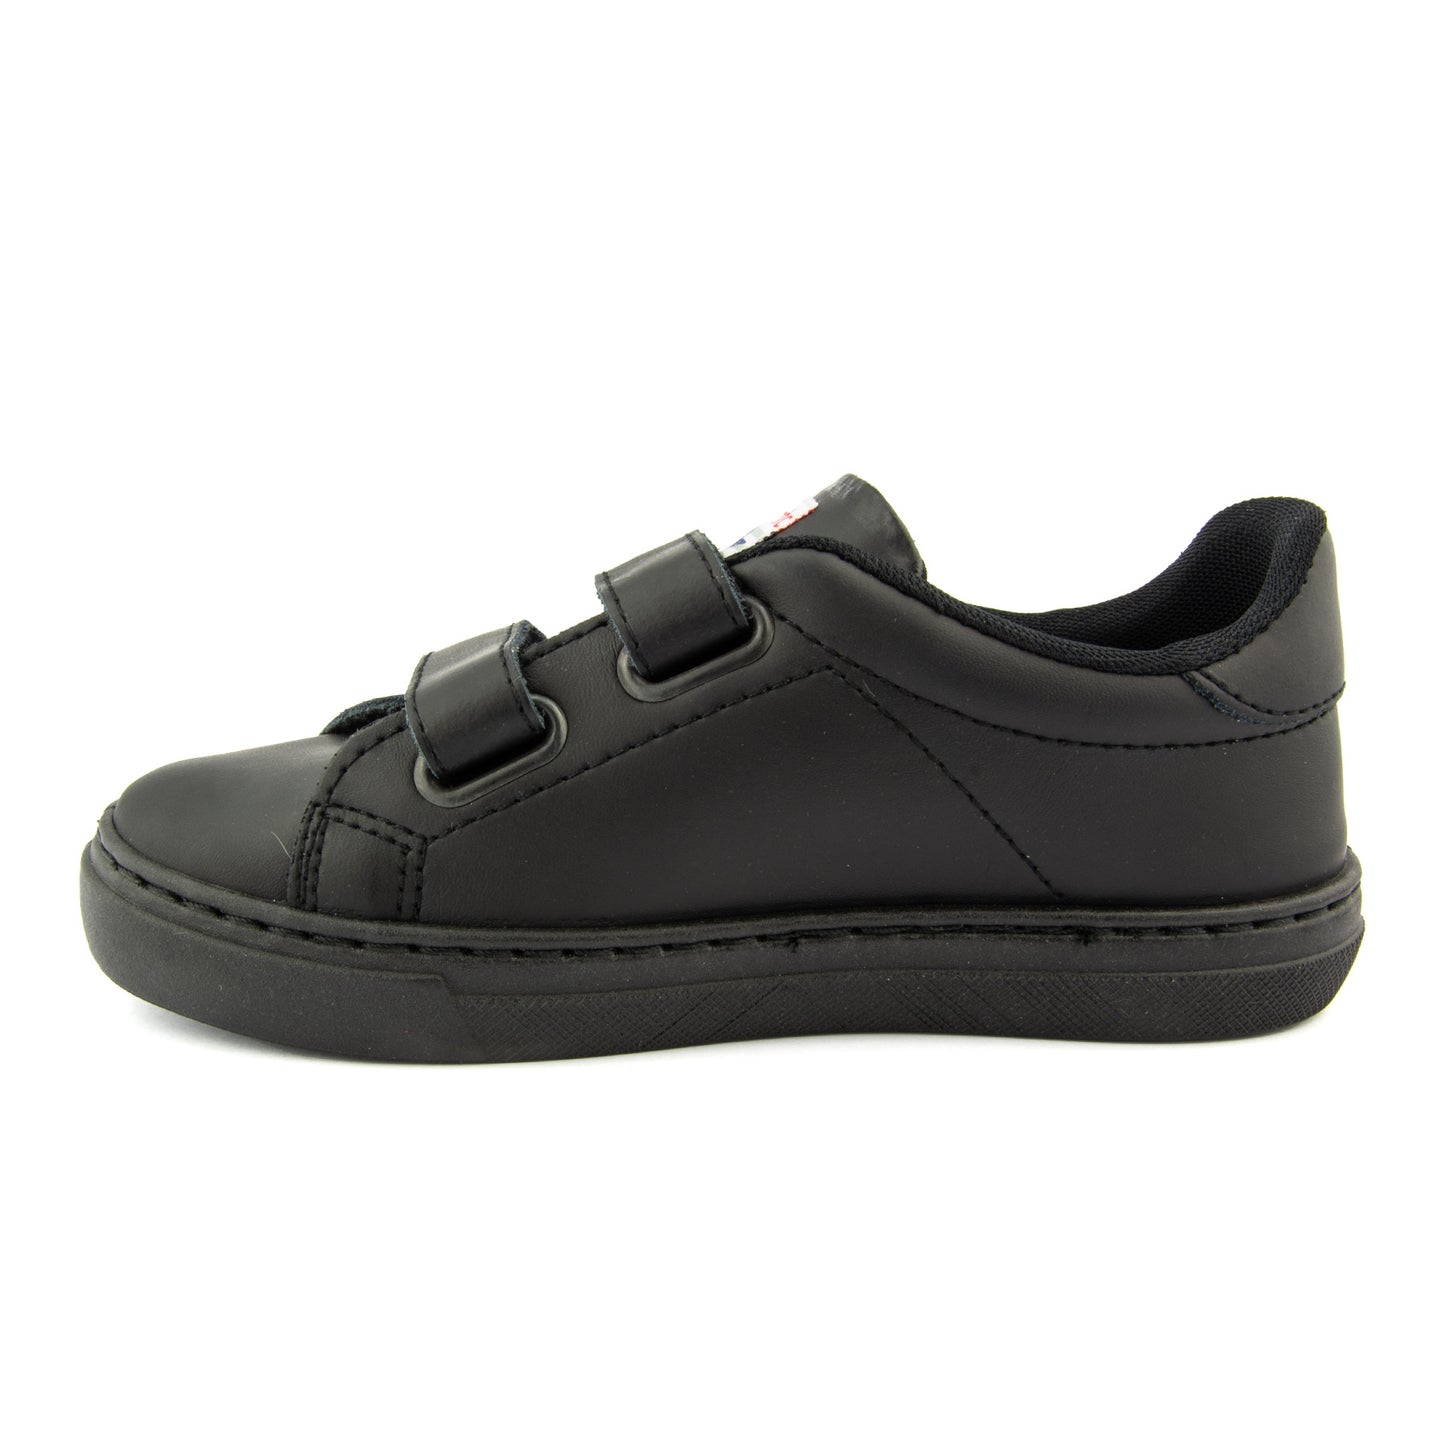 Cienta Black School Shoes